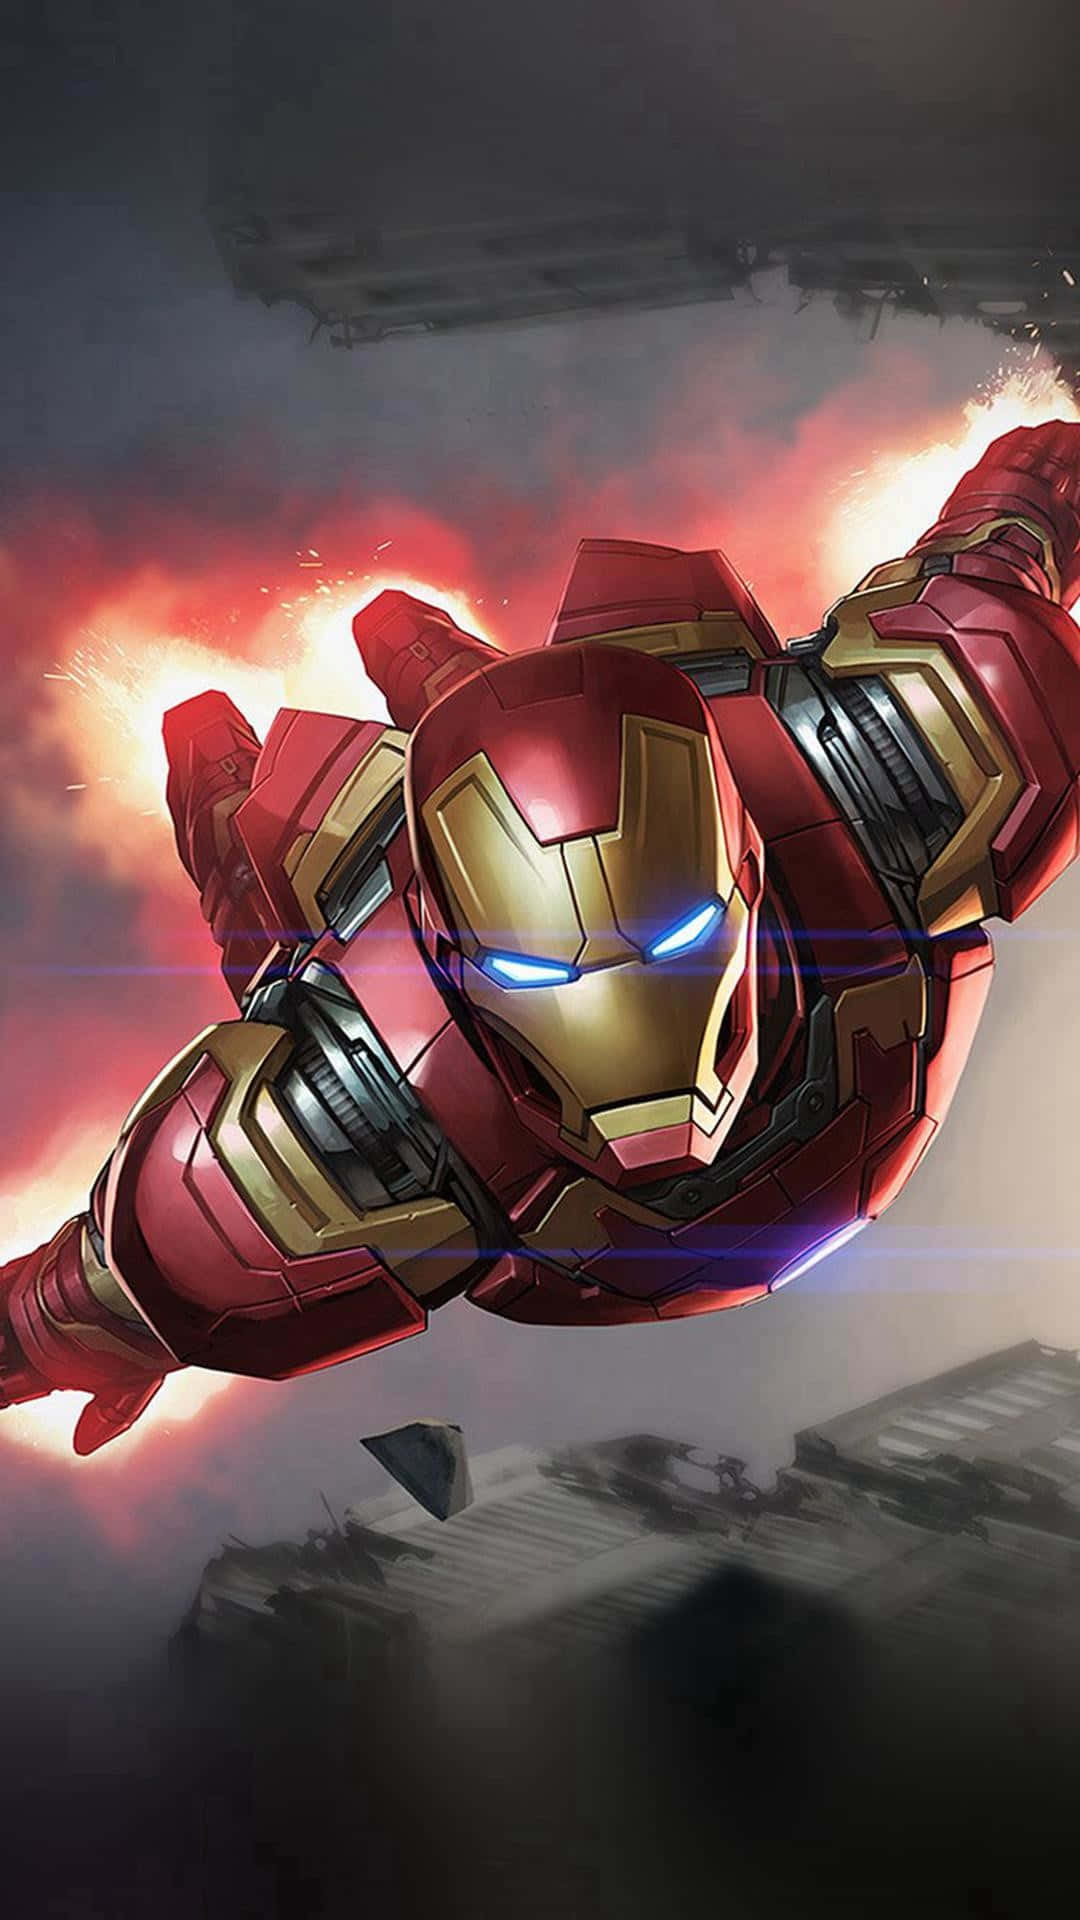 Verbessernsie Ihr Iphone Mit Diesem Beeindruckenden Cool Iron Man Hintergrundbild. Wallpaper